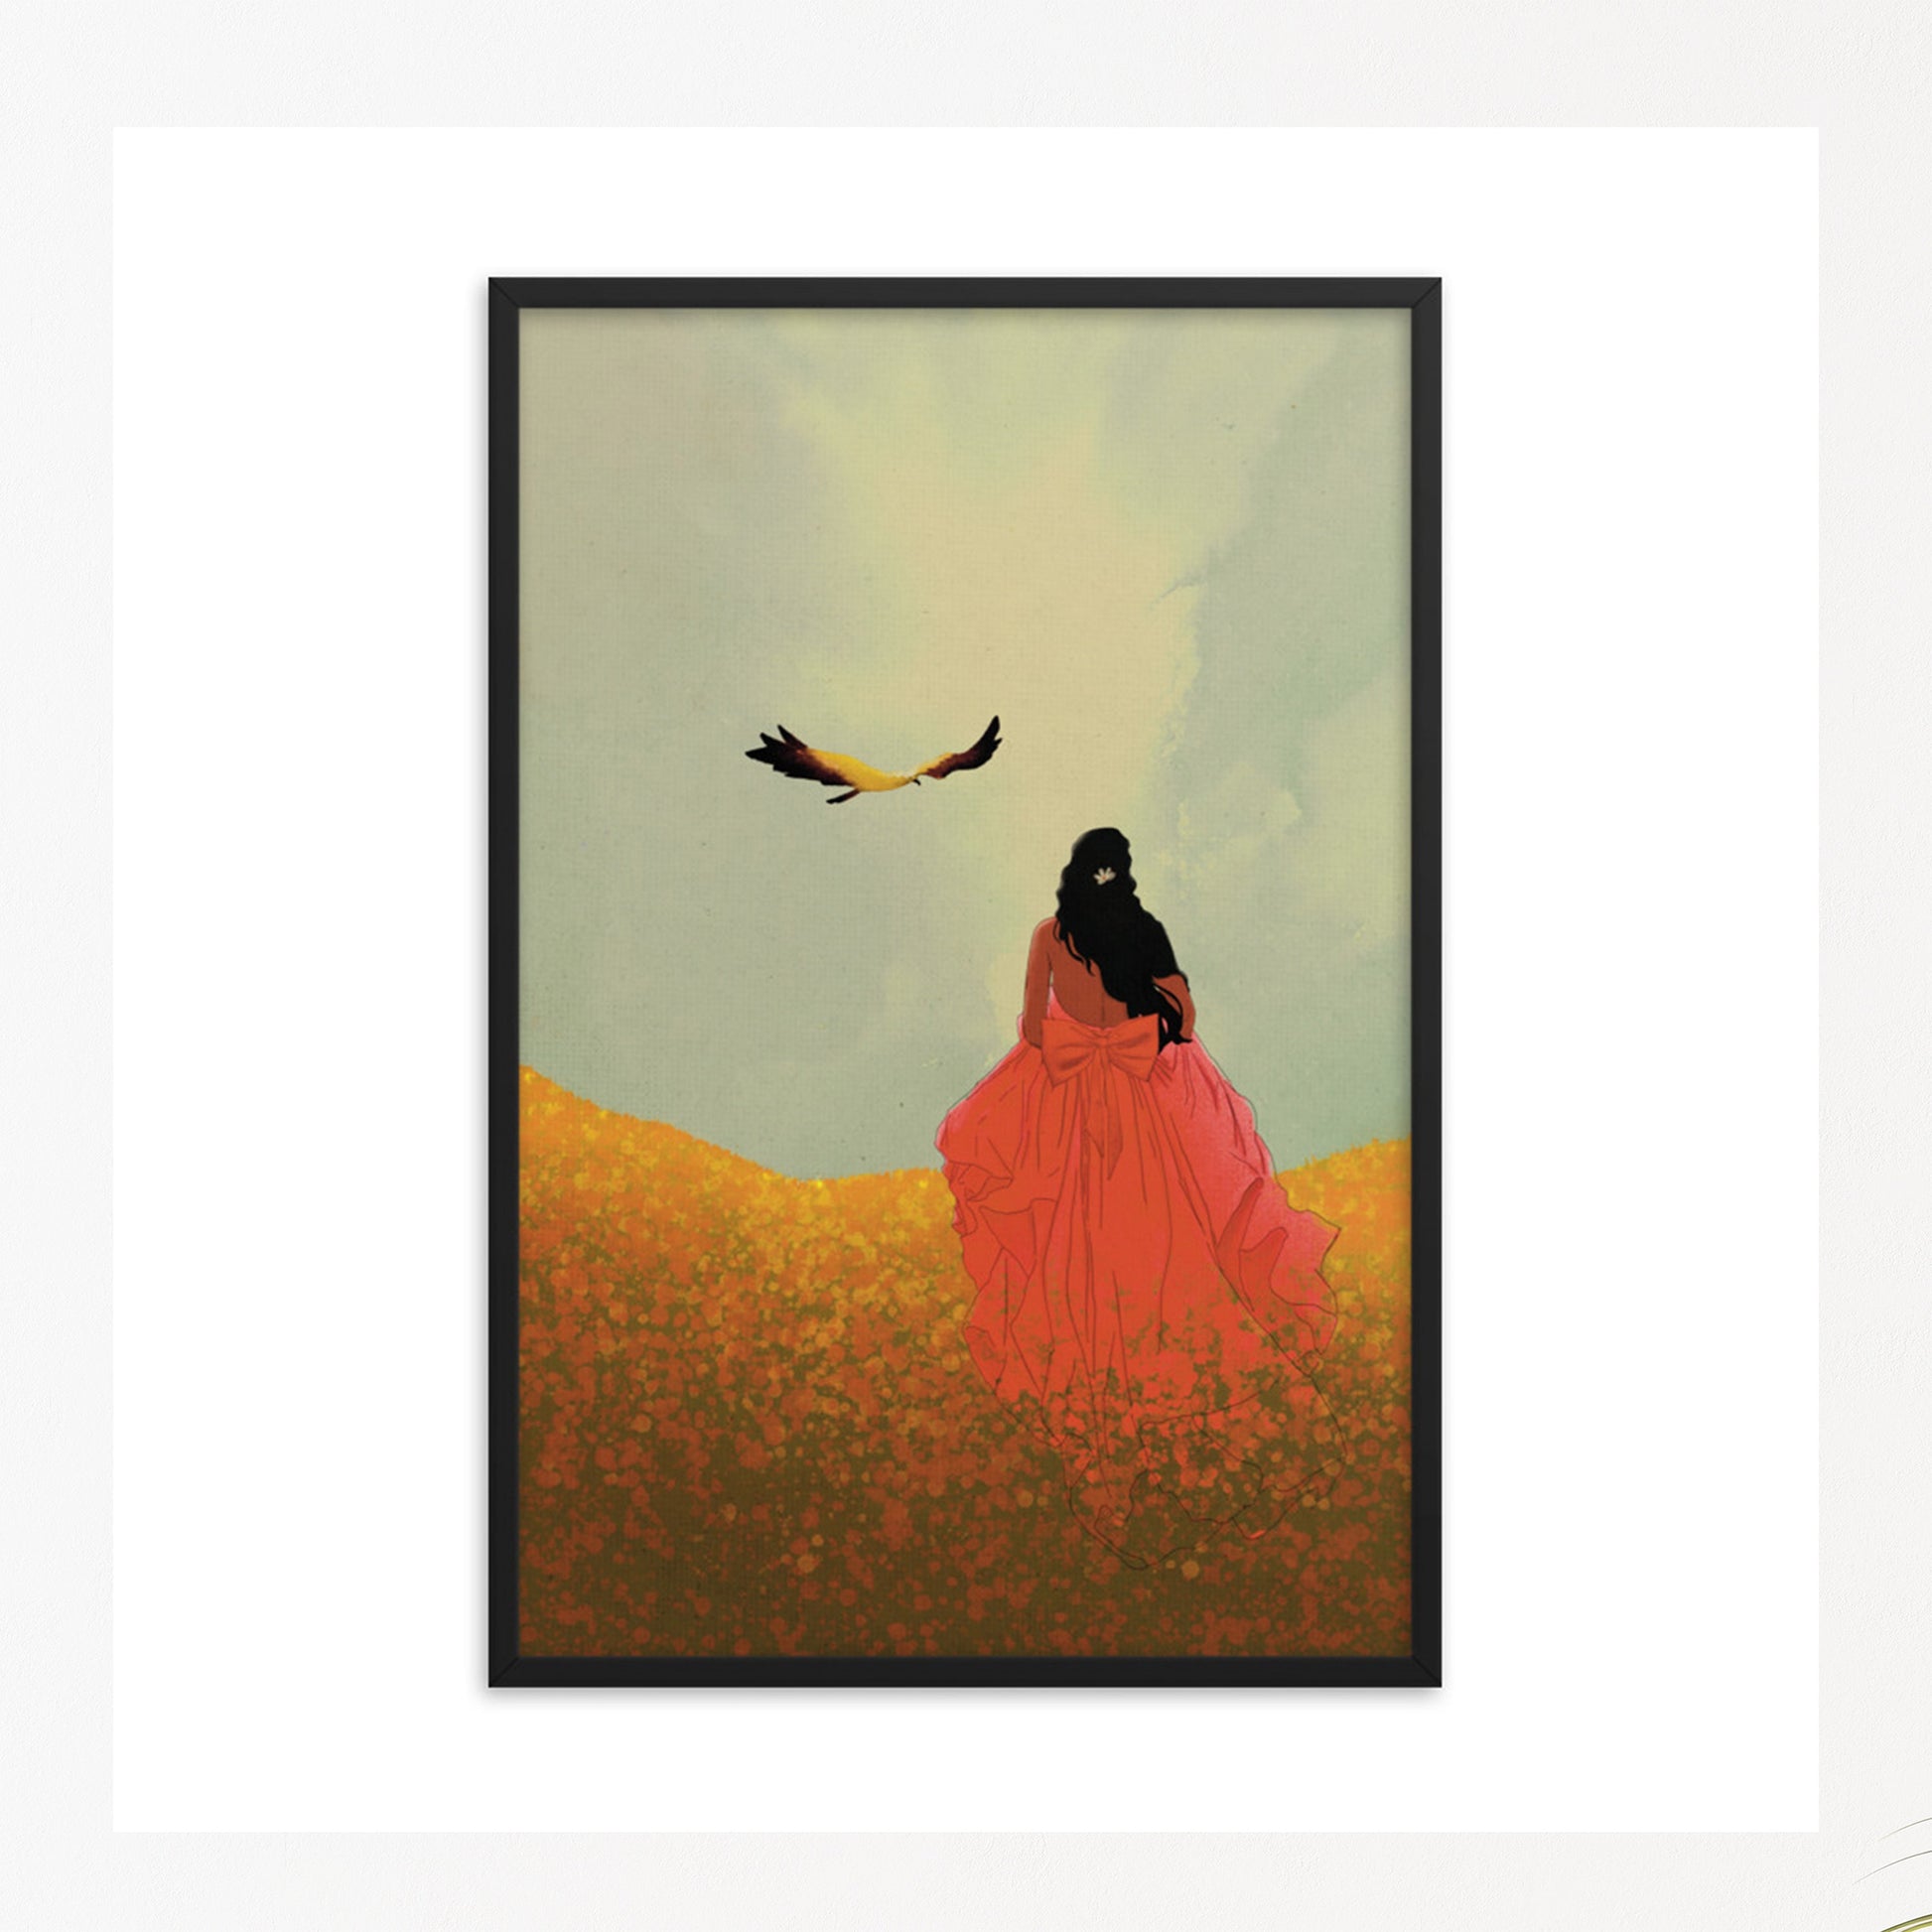 Woman in bright red dress in yellow, orange flower field & a bird flying in blue sky in black frame